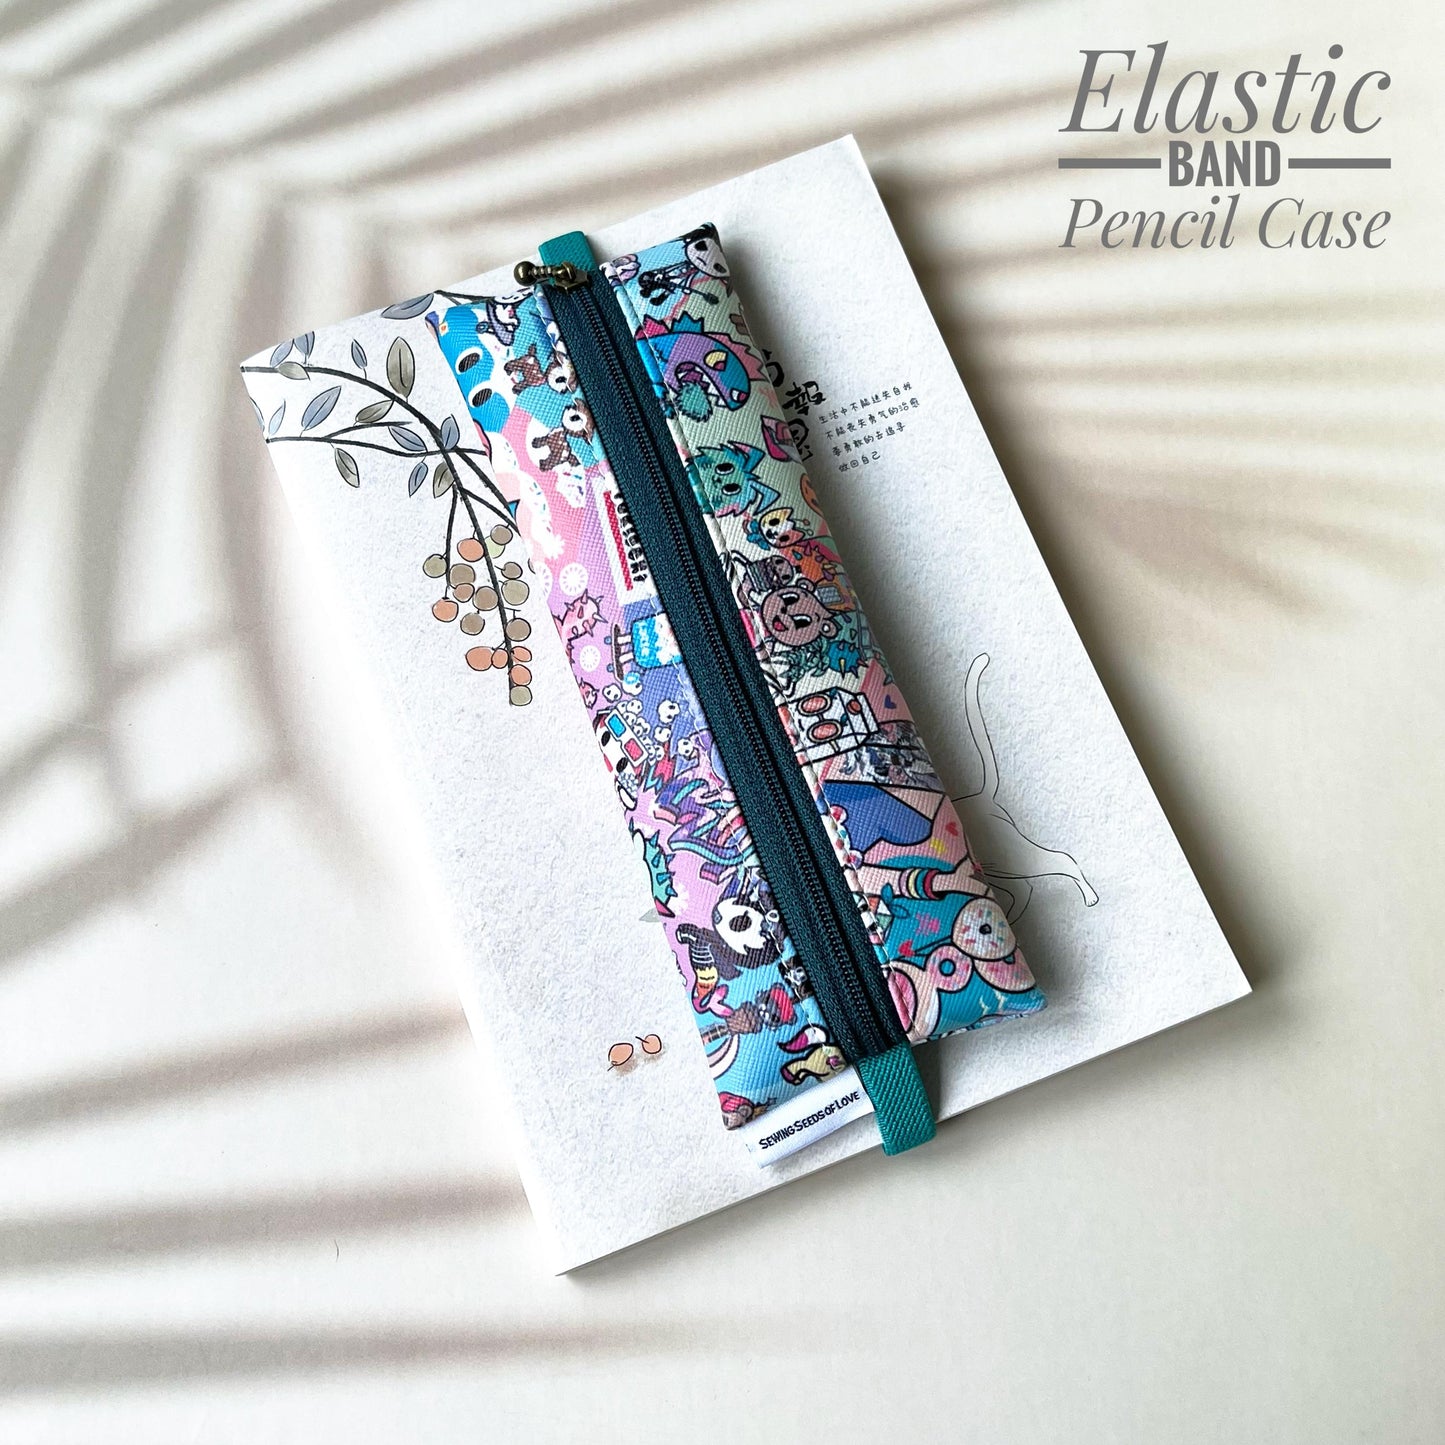 Elastic Band Pencil Case - EBPC22